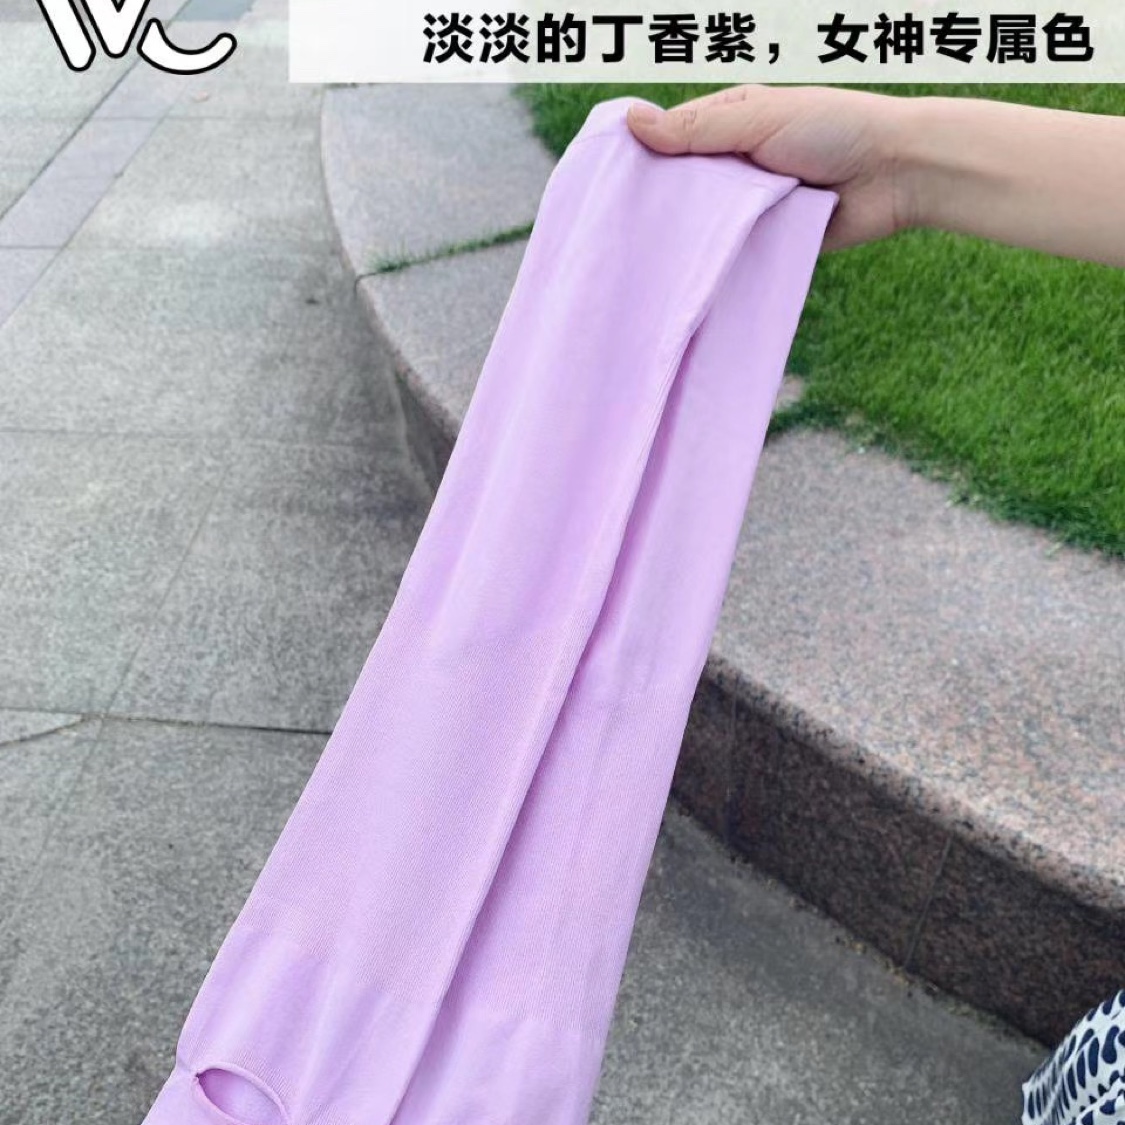 VVC防晒冰袖（经典款）丁香紫
UPF 200+ 紫外线阻隔率≥99%
淡淡的丁香紫女神专属色系~产品图